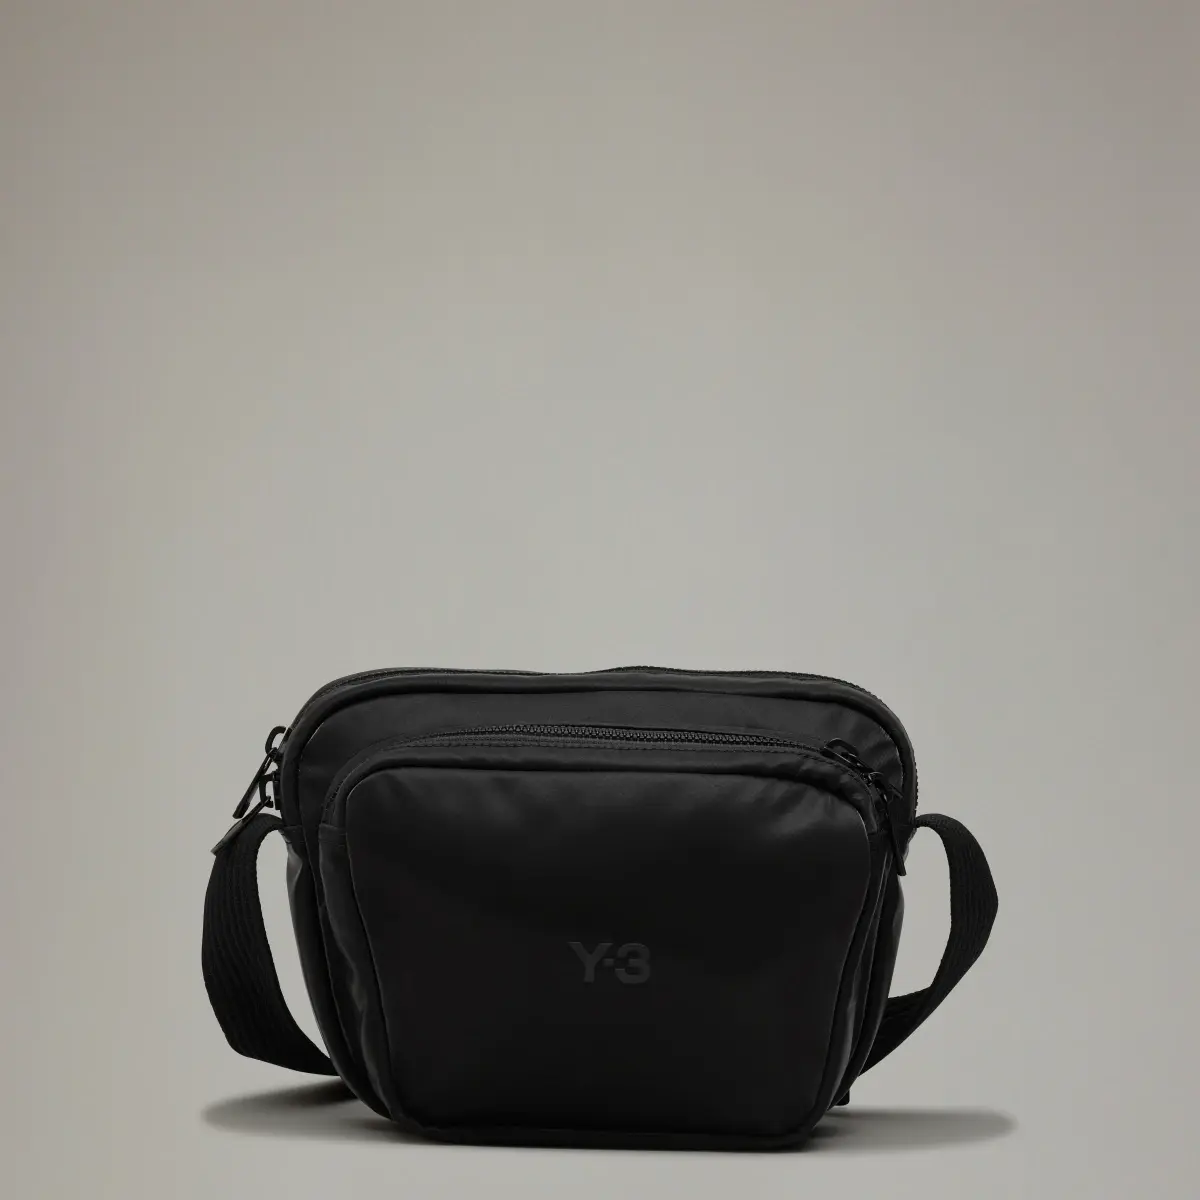 Adidas Y-3 X BODY BAG. 1